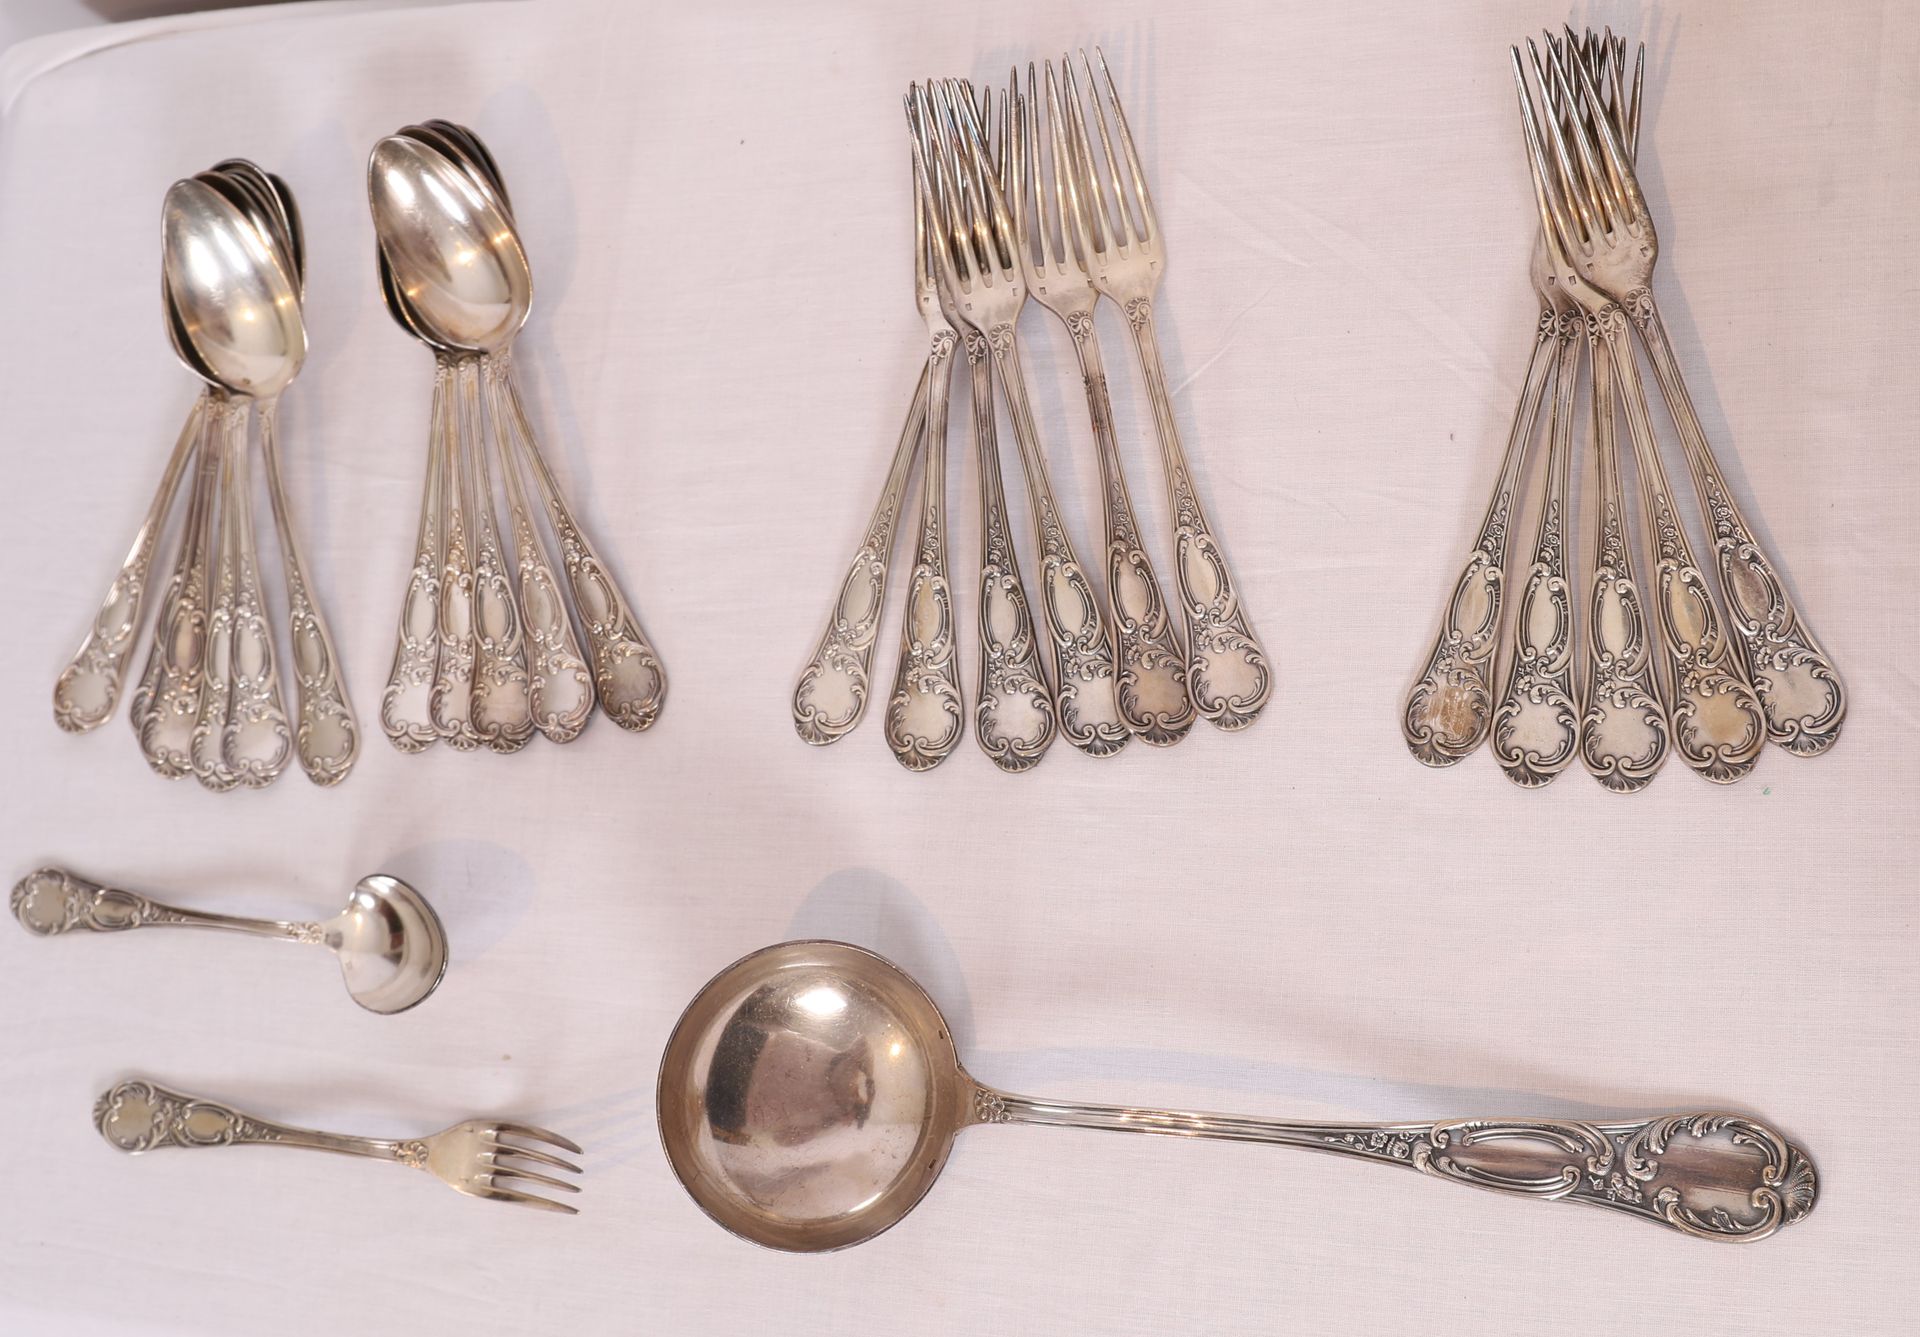 Null 12件带卷轴和贝壳的镀银餐具和一个相同型号的勺子

使用和维护的条件